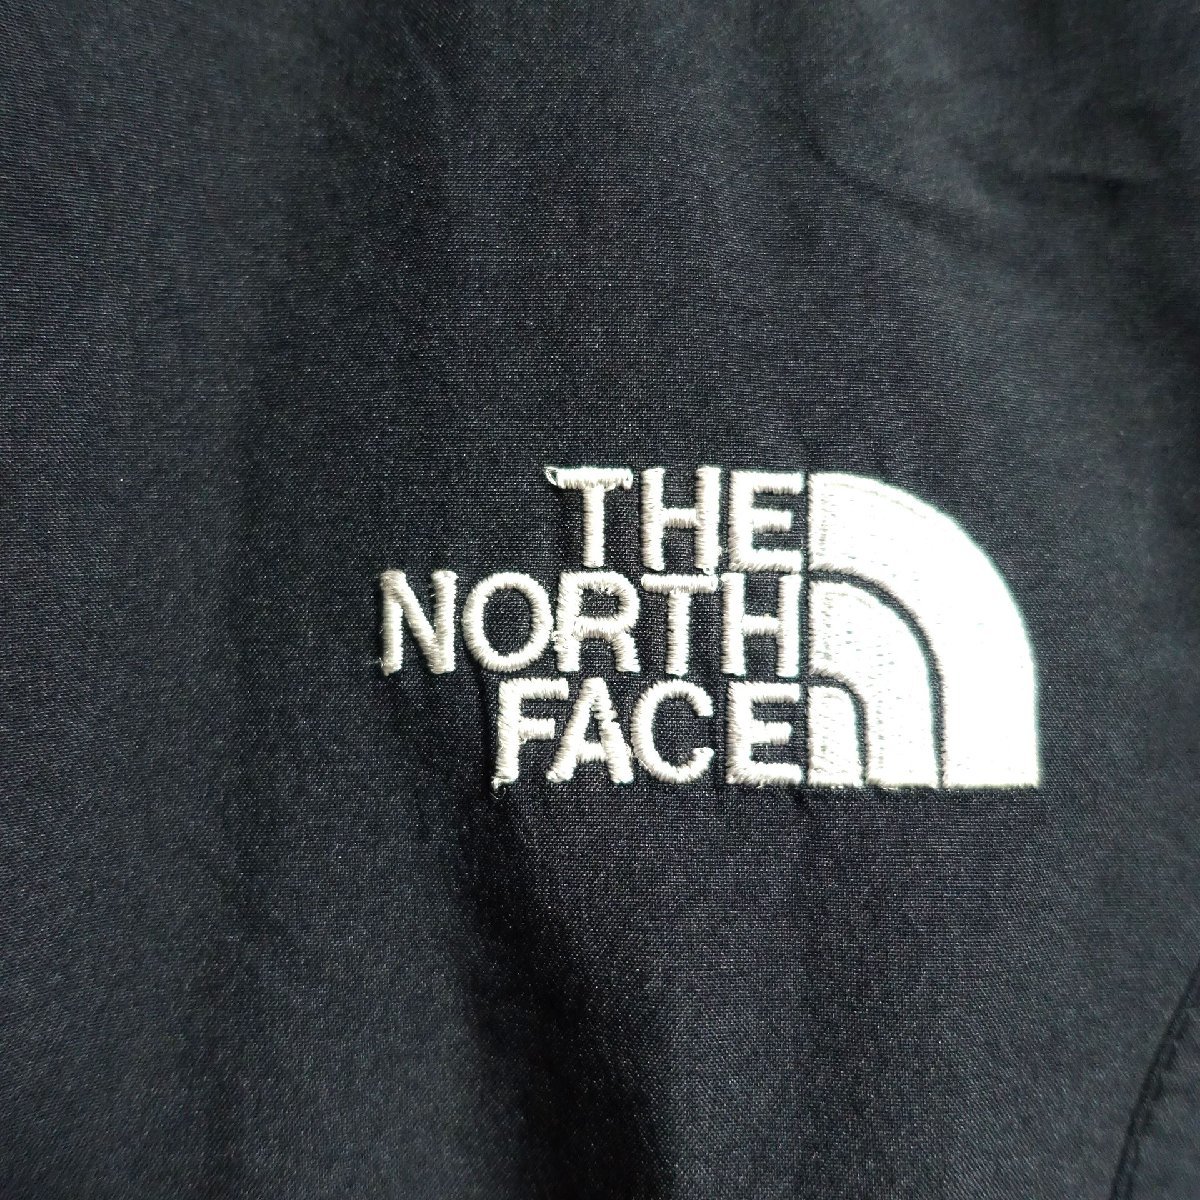 THE NORTH FACE ノースフェイス ゴアテックス GORE-TEX マウンテンパーカー メンズ Mサイズ 正規品 ブラック A4757_画像4